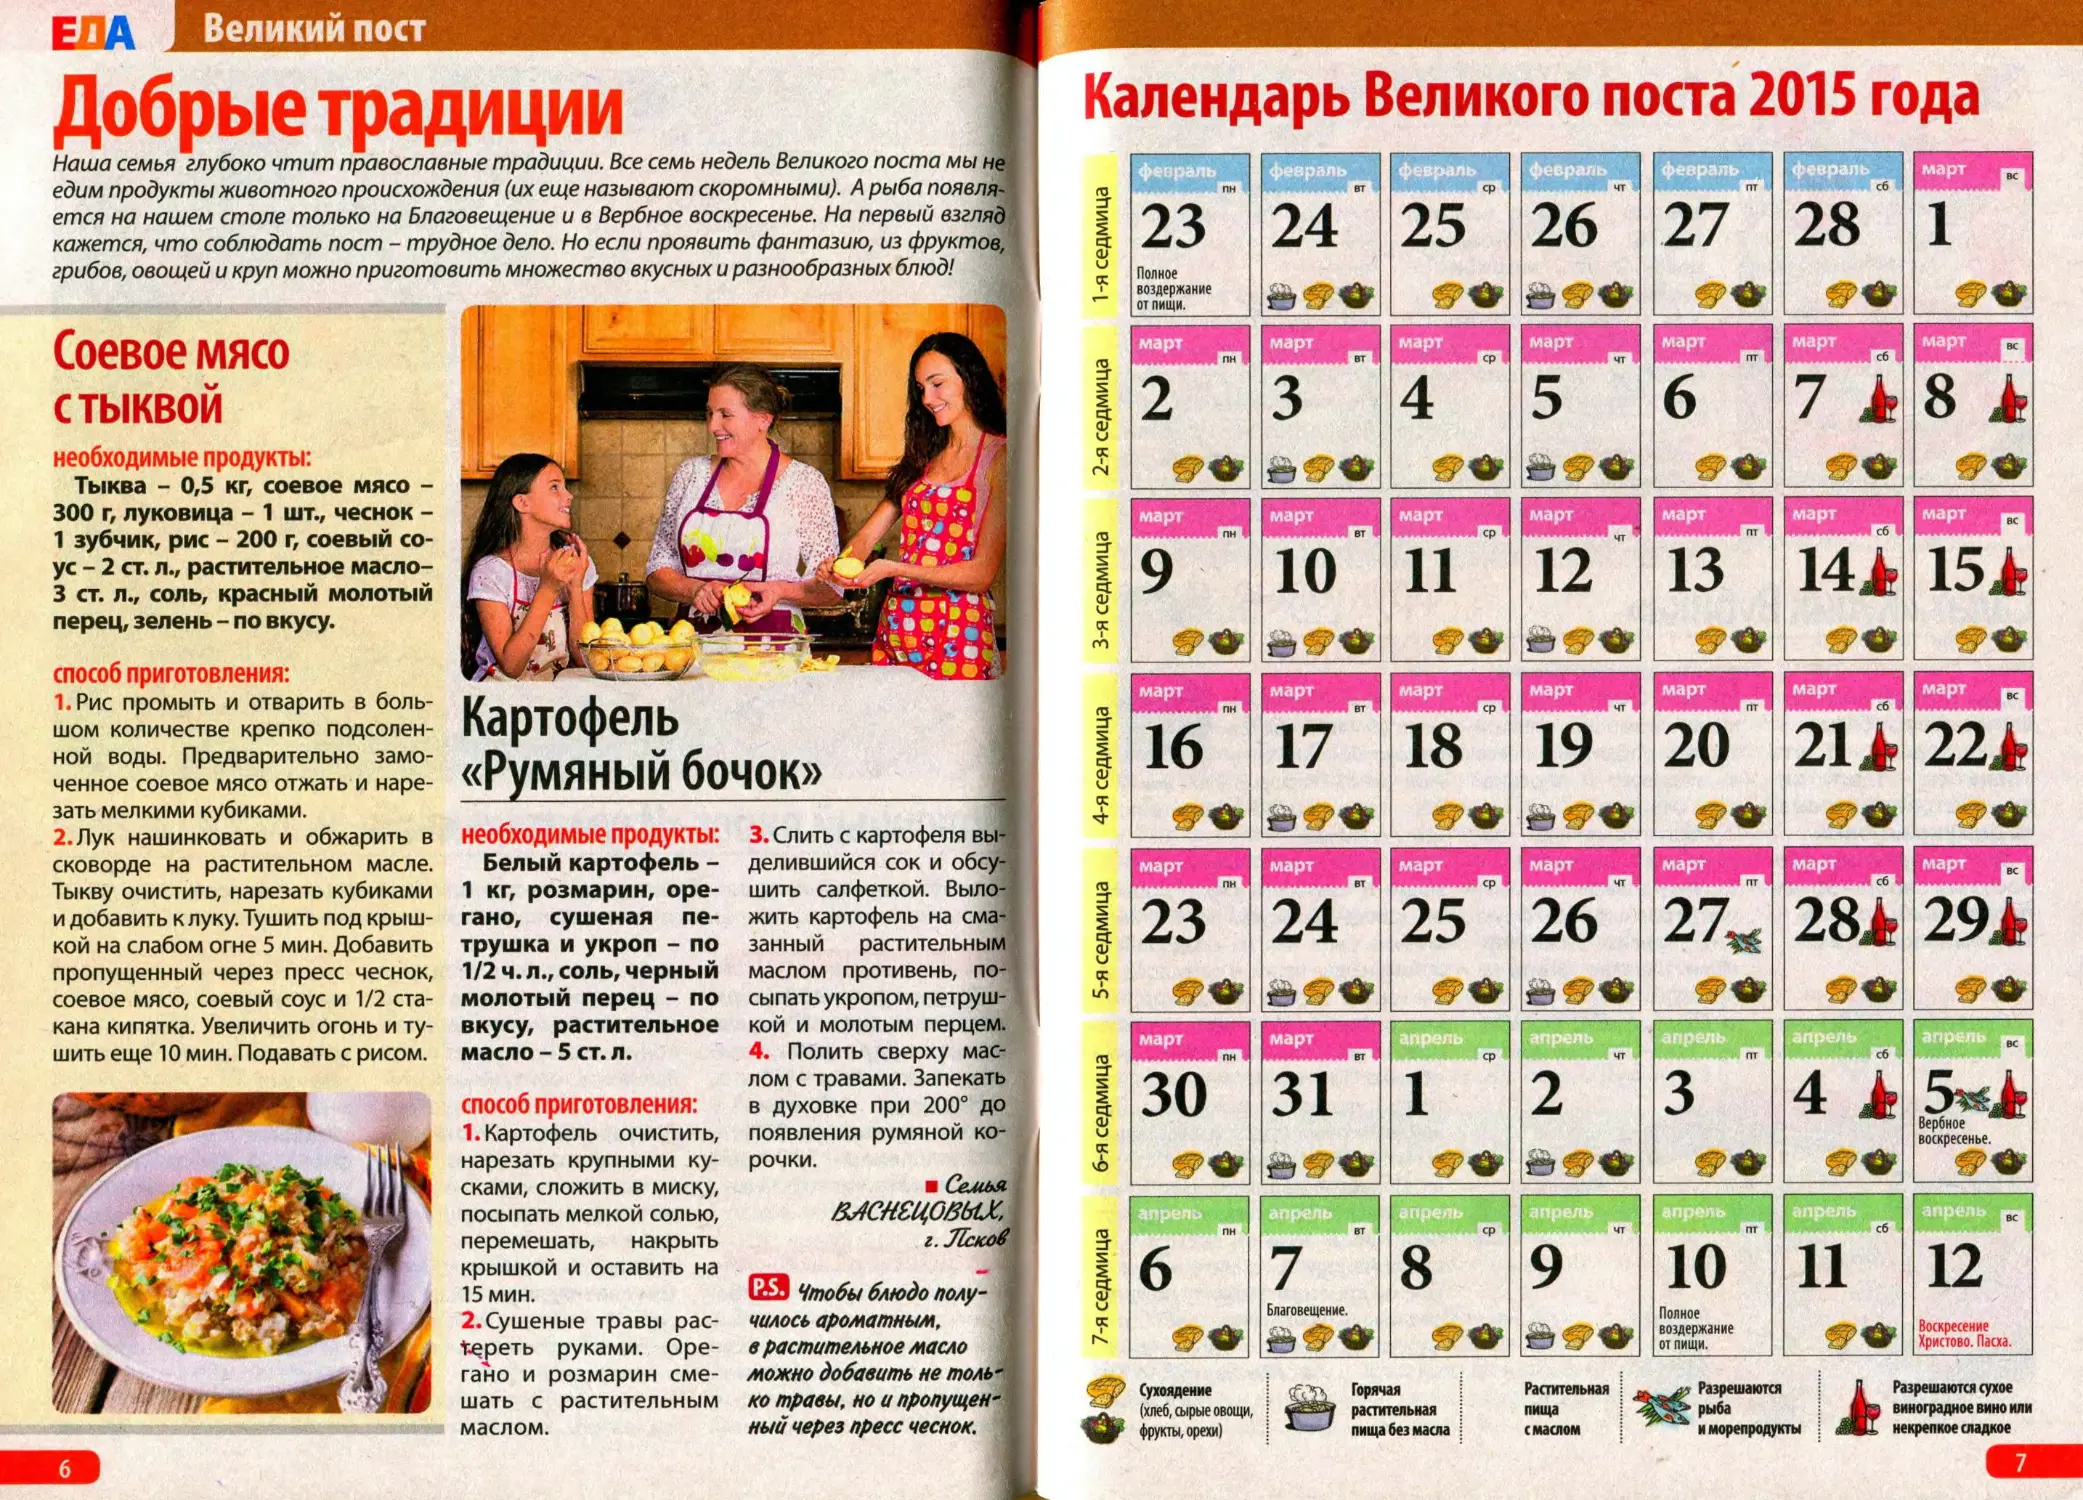 Пасха 2015 году число. Журнал о еде.